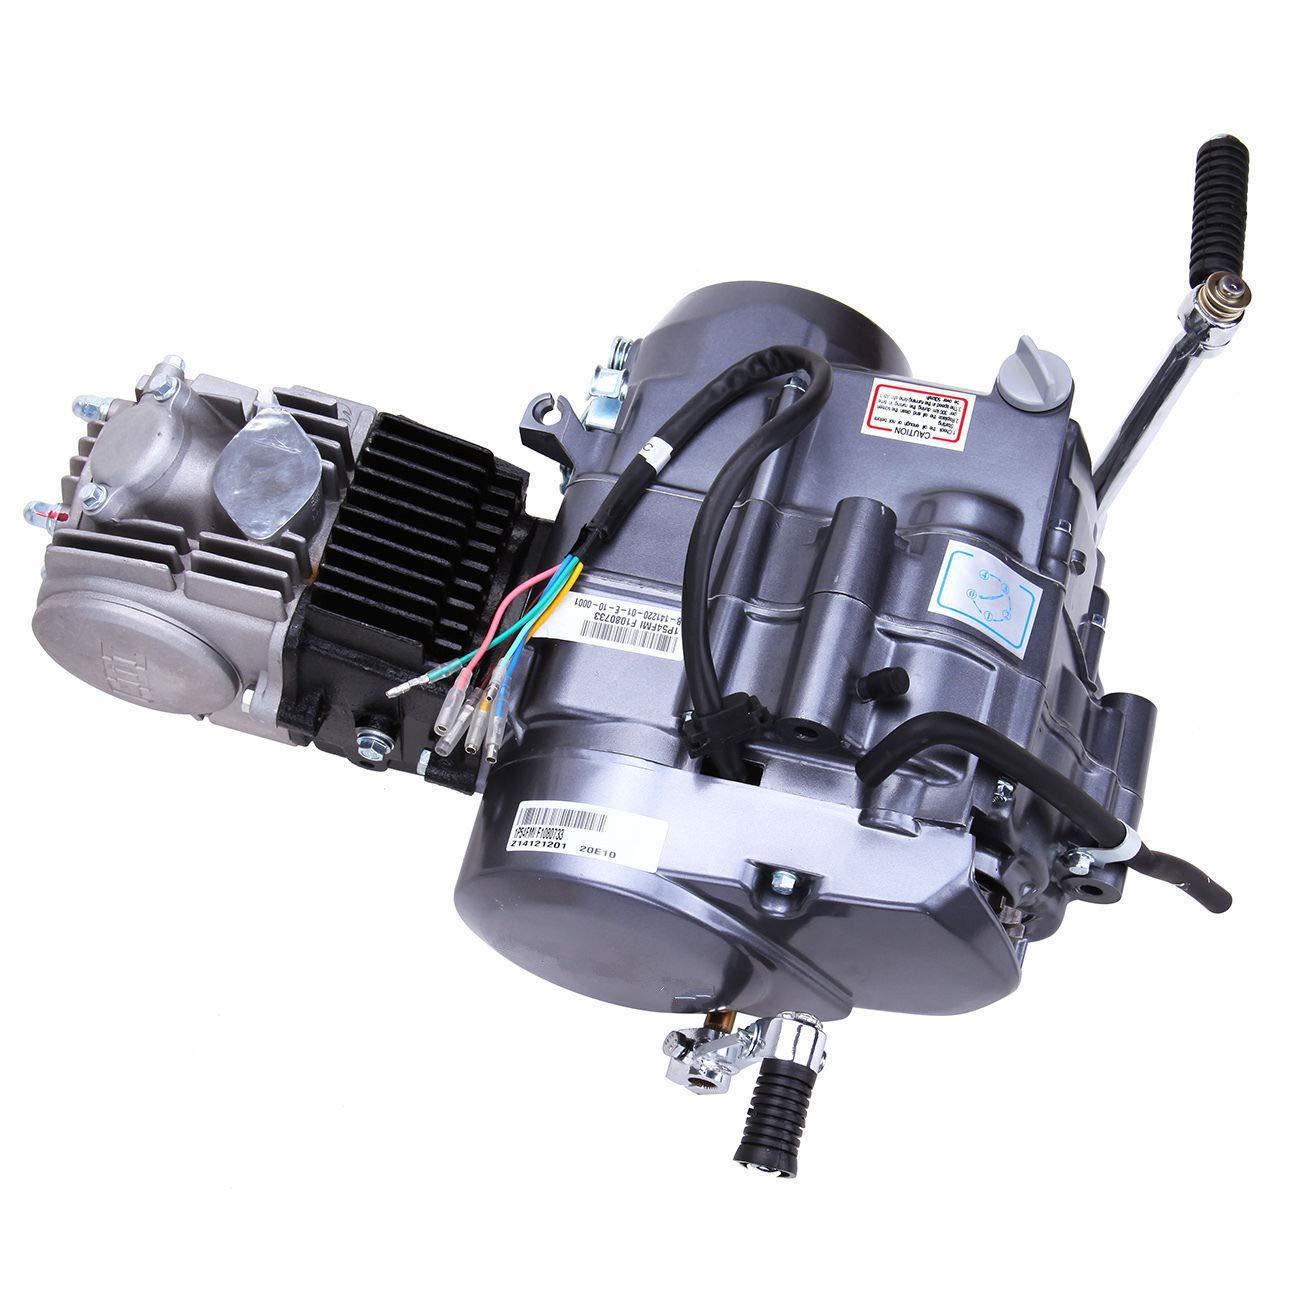 125 cc 4 tempi ATV motore monocilindrico Pull Start carburatore testa filtro aria Dirtbike frizione manuale